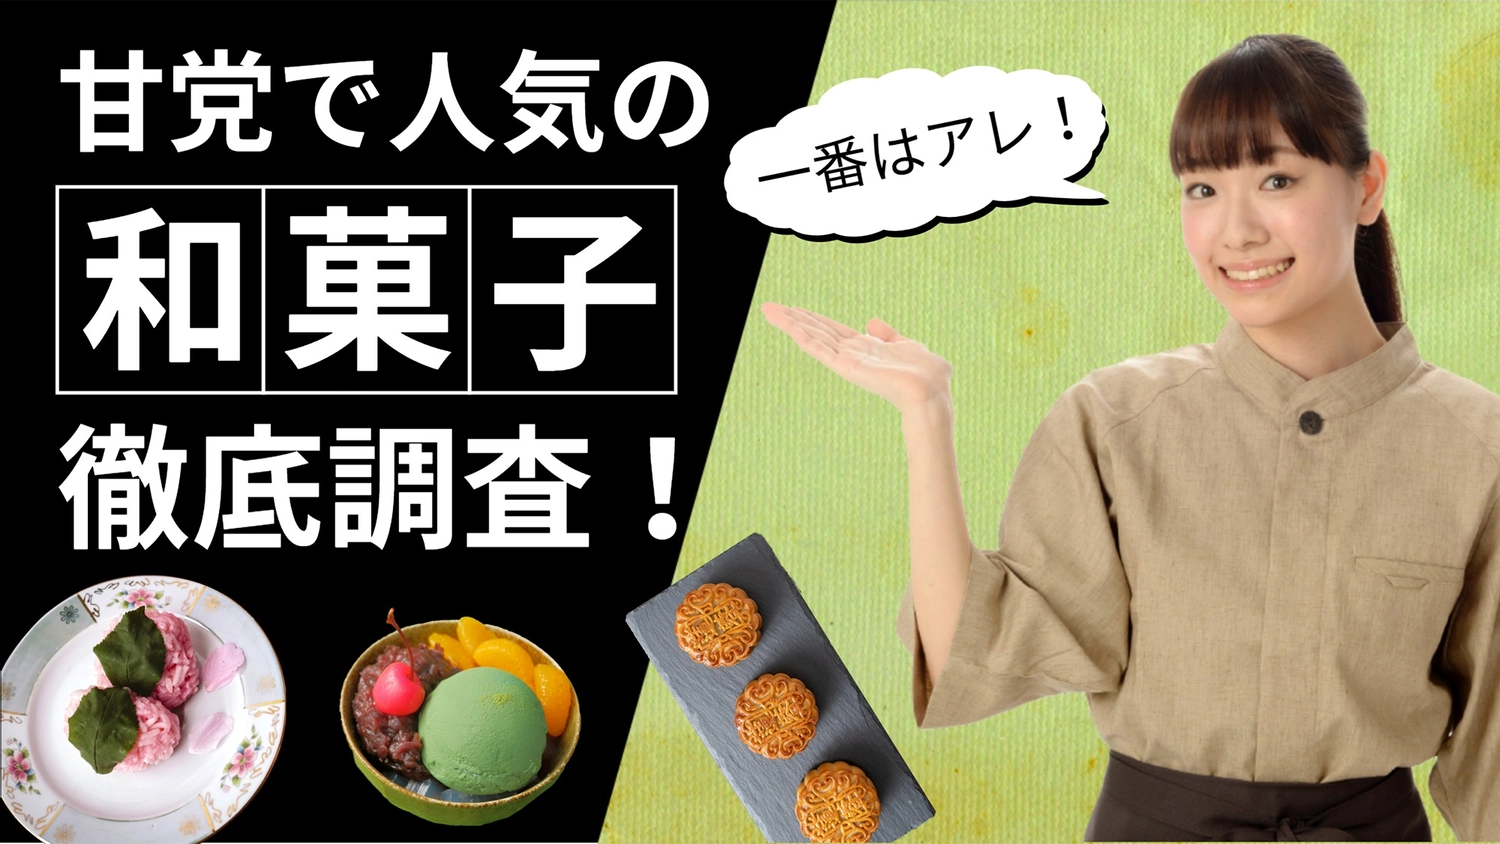 甘党で人気の和菓子調査サムネイル, 일본식 과자, 조사, 조사하다, 유튜브 썸네일 템플릿